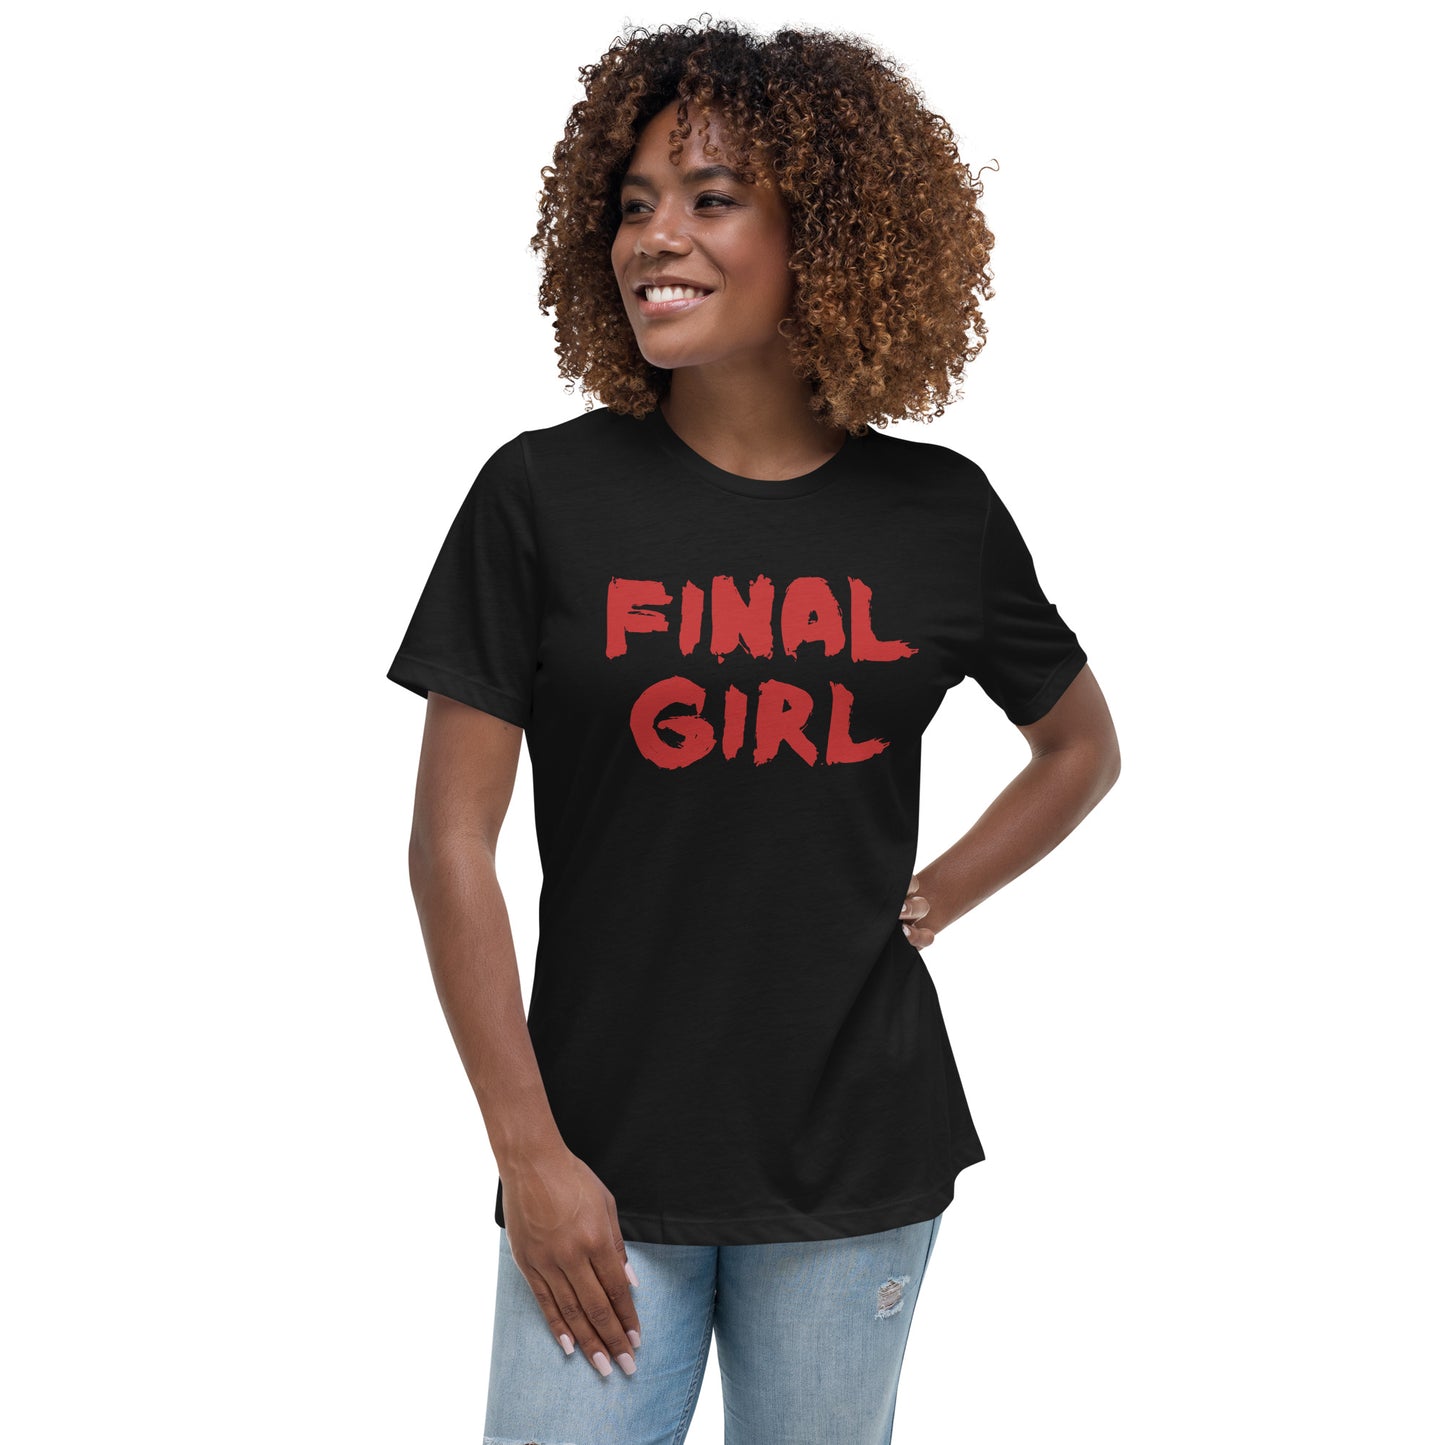 Final Girl Women's Relaxed Fit Shirt